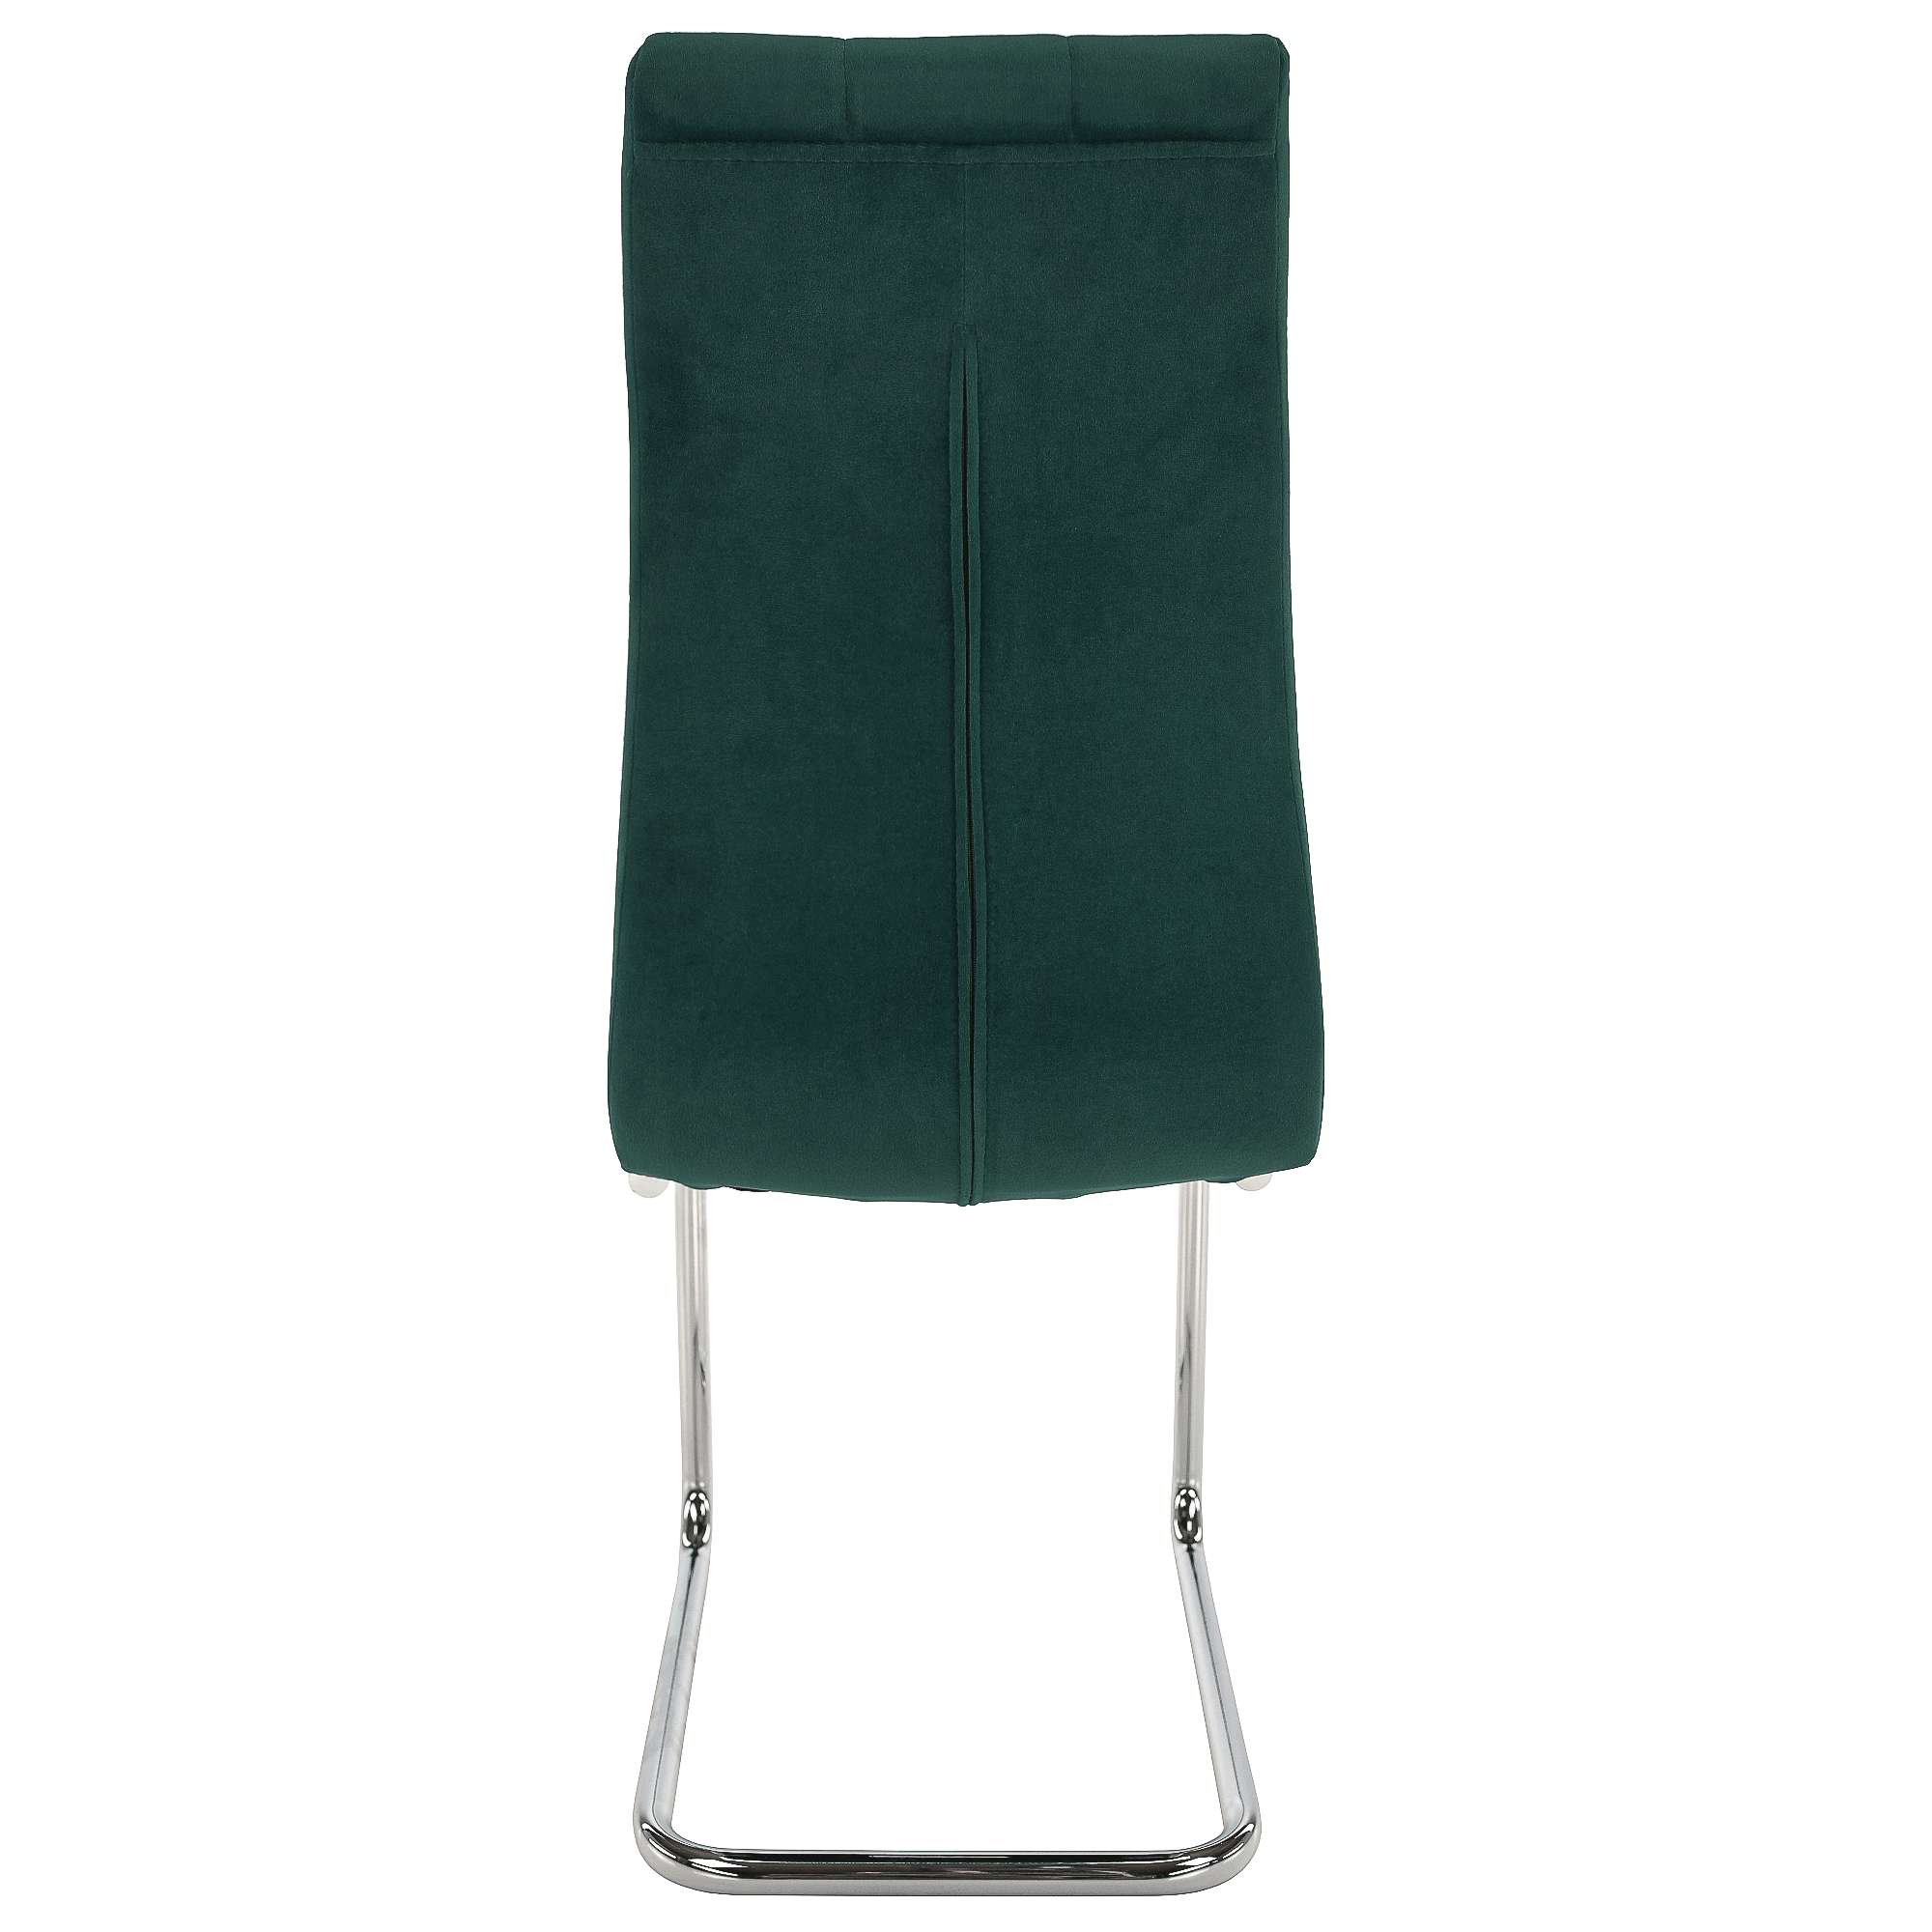 Jídelní židle, smaragdová Velvet látka / chrom, SALOMA NEW